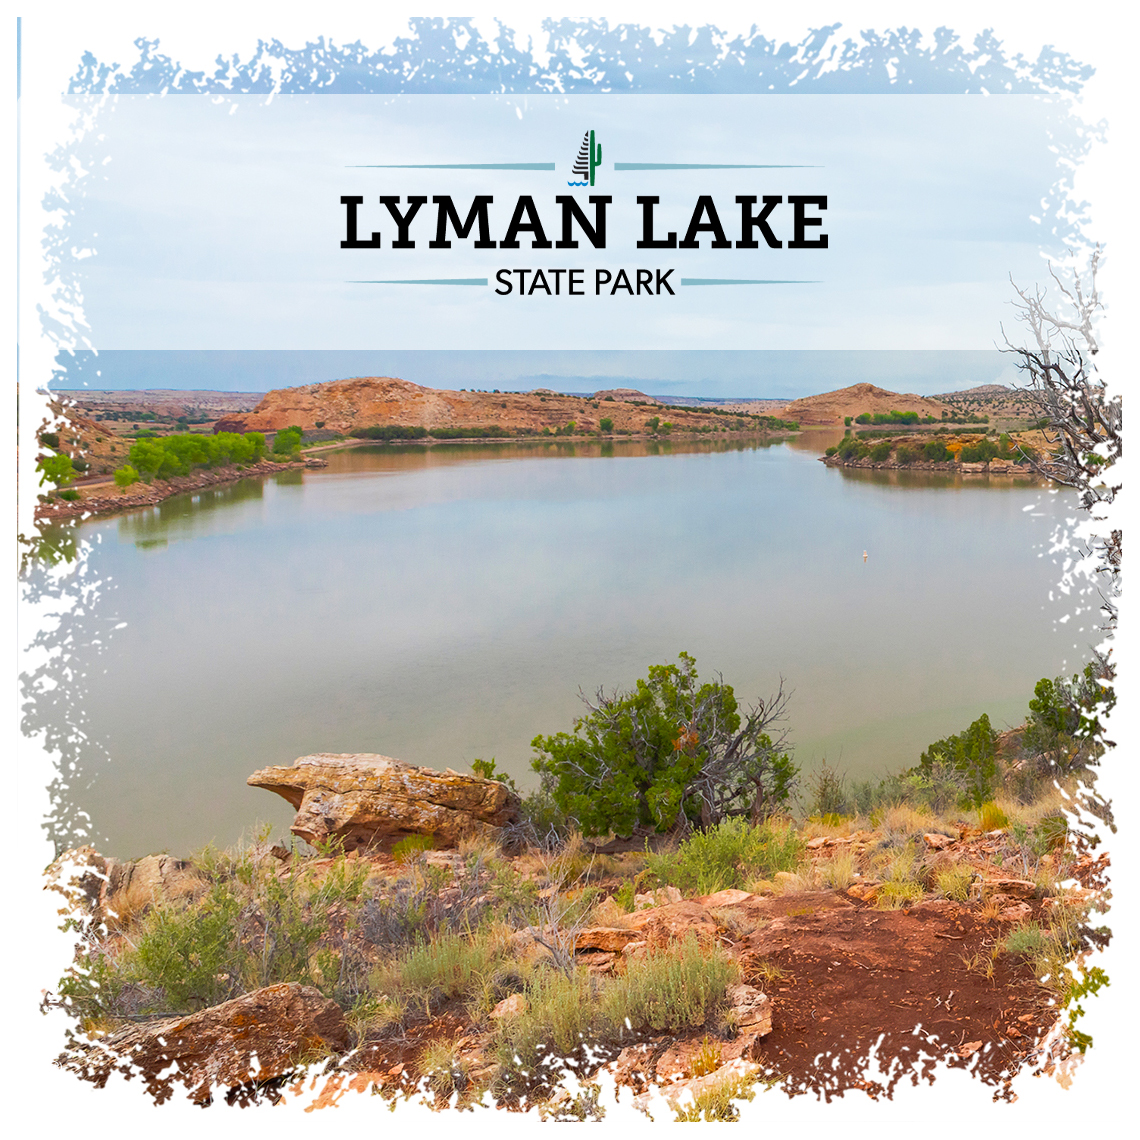 Panoramic view of Lyman Lake